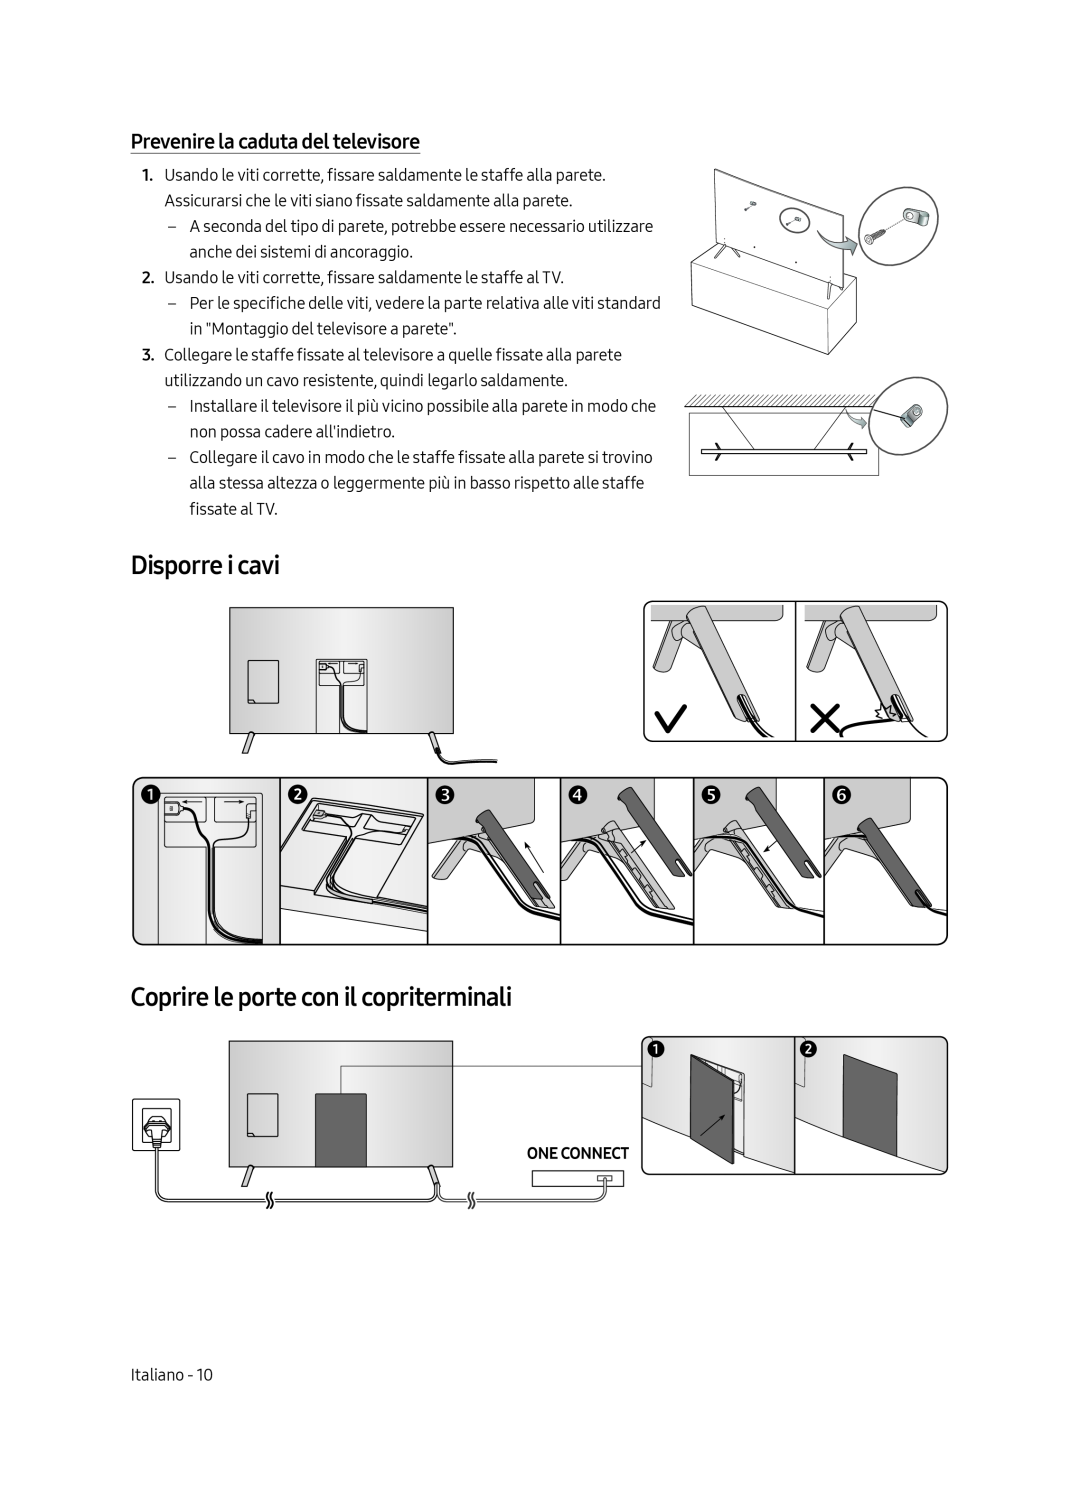 Samsung UE75MU7000TXXU manual Disporre i cavi Coprire le porte con il copriterminali, Prevenire la caduta del televisore 